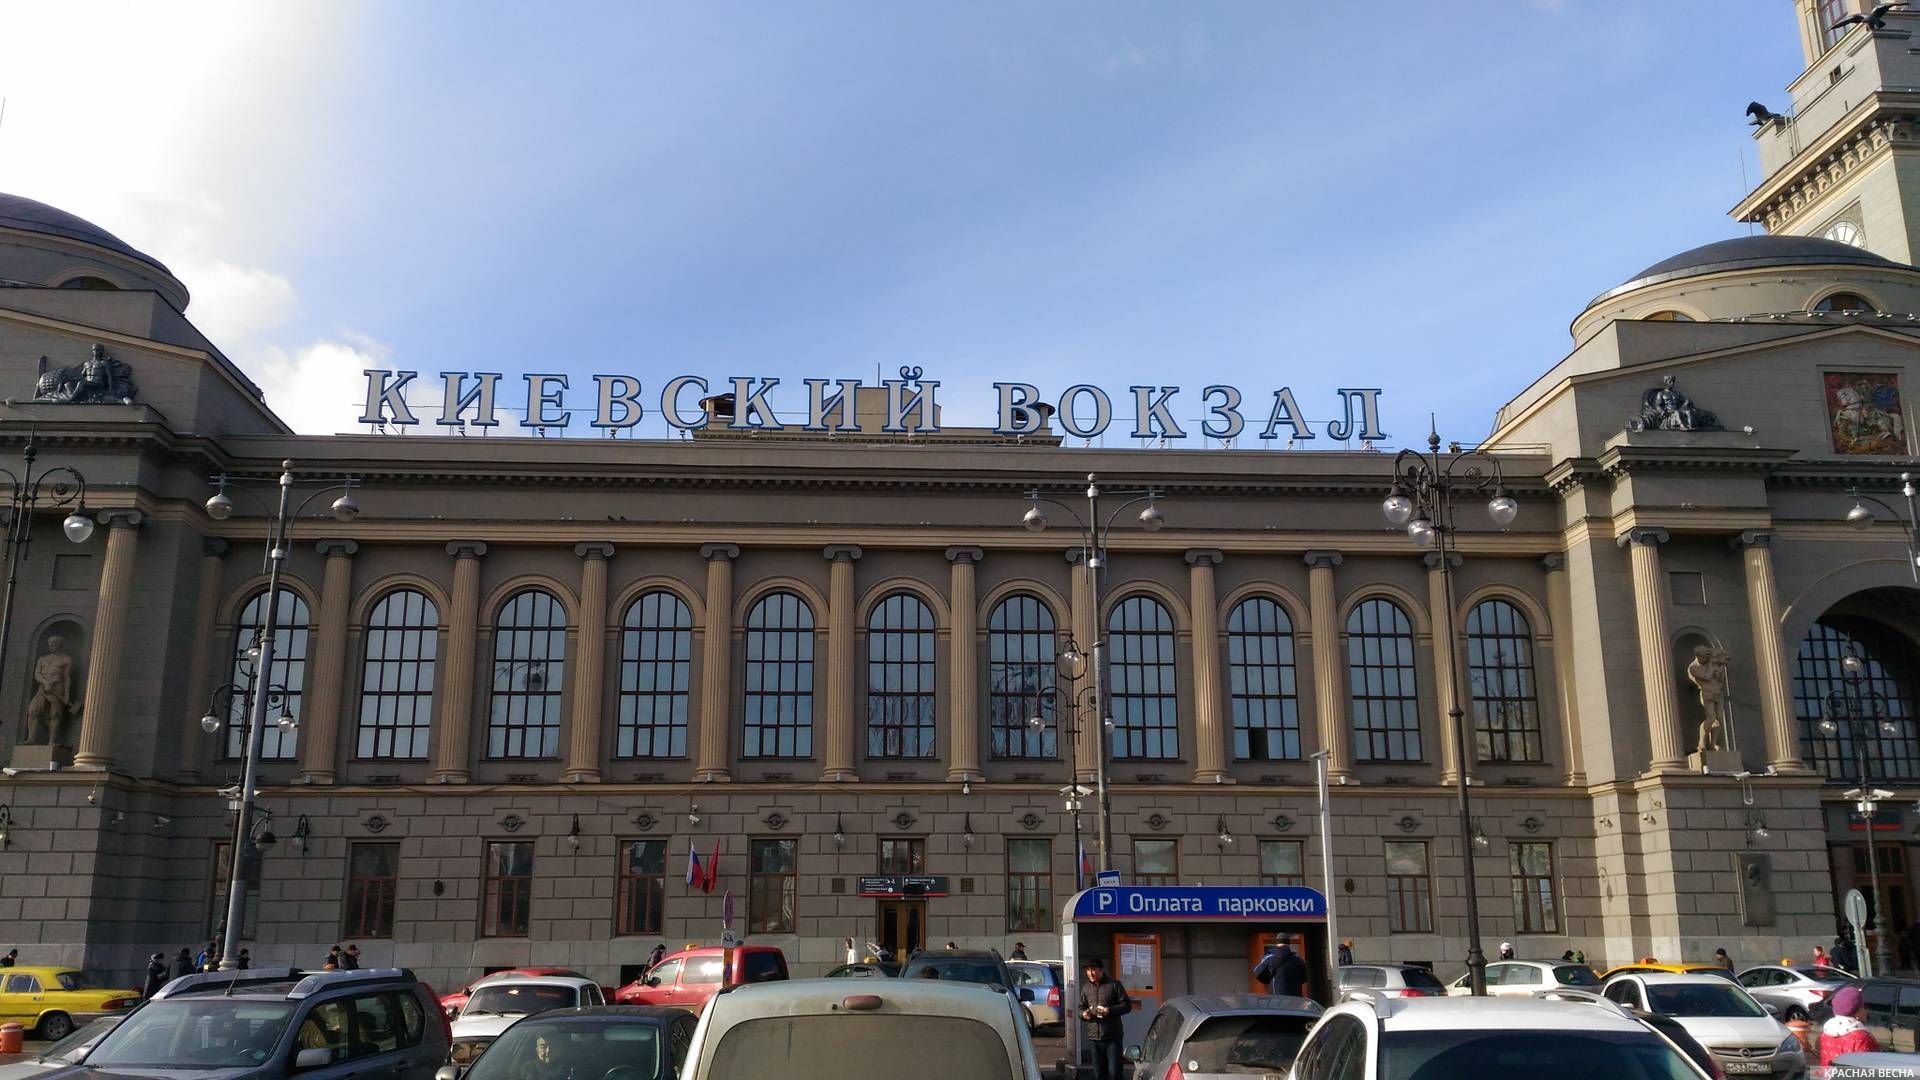 Казанский вокзал москва фото внутри вокзала